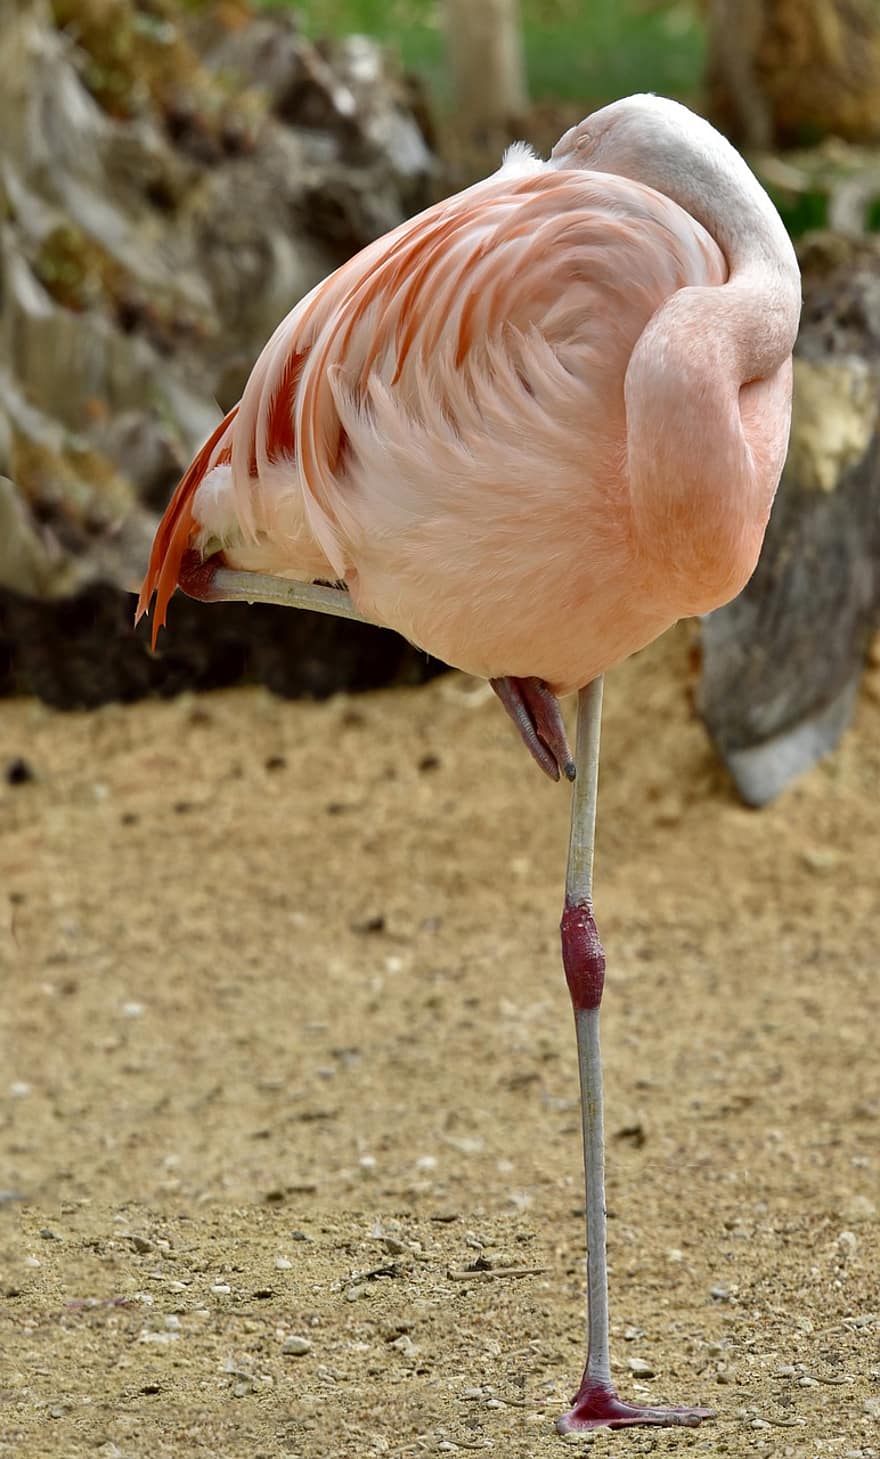 фламинго, розовый, птица, розовая птица, розовые перья, розовое оперение, перья, голенастый, длинноногая птица, природа, экзотическая птица